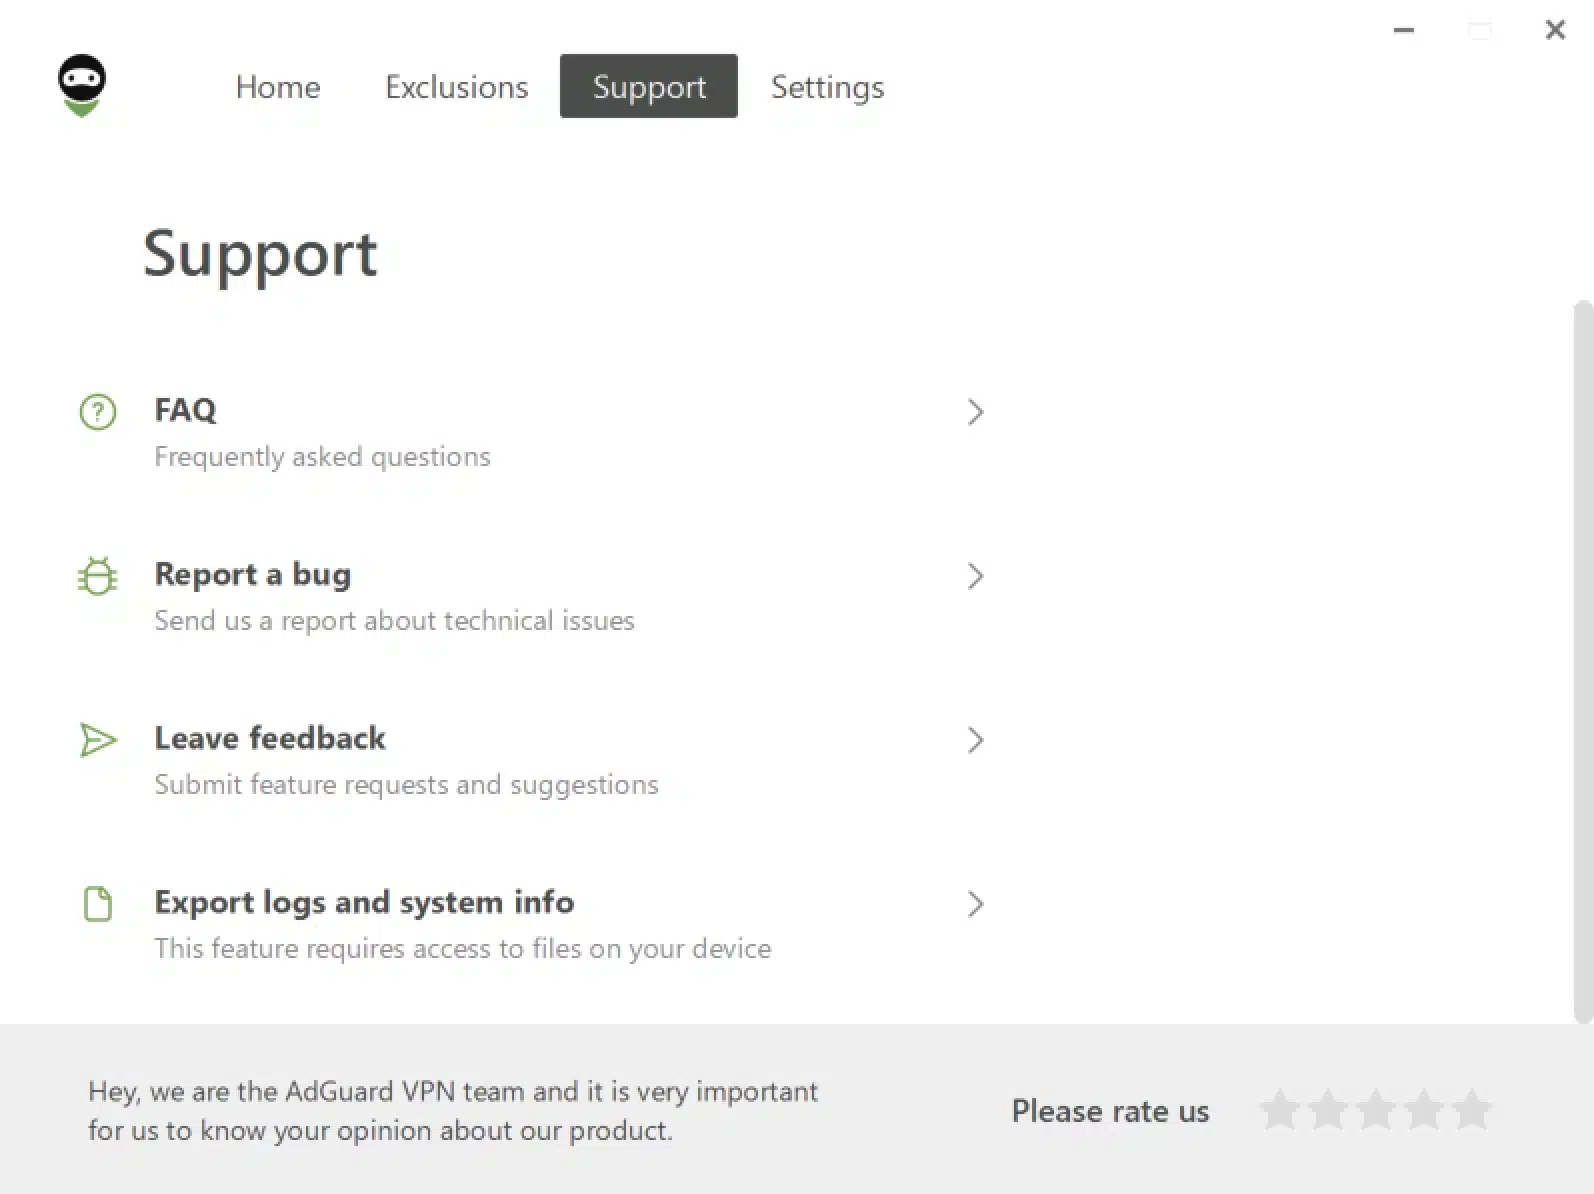 AdGuard_VPN - Windows App - Support